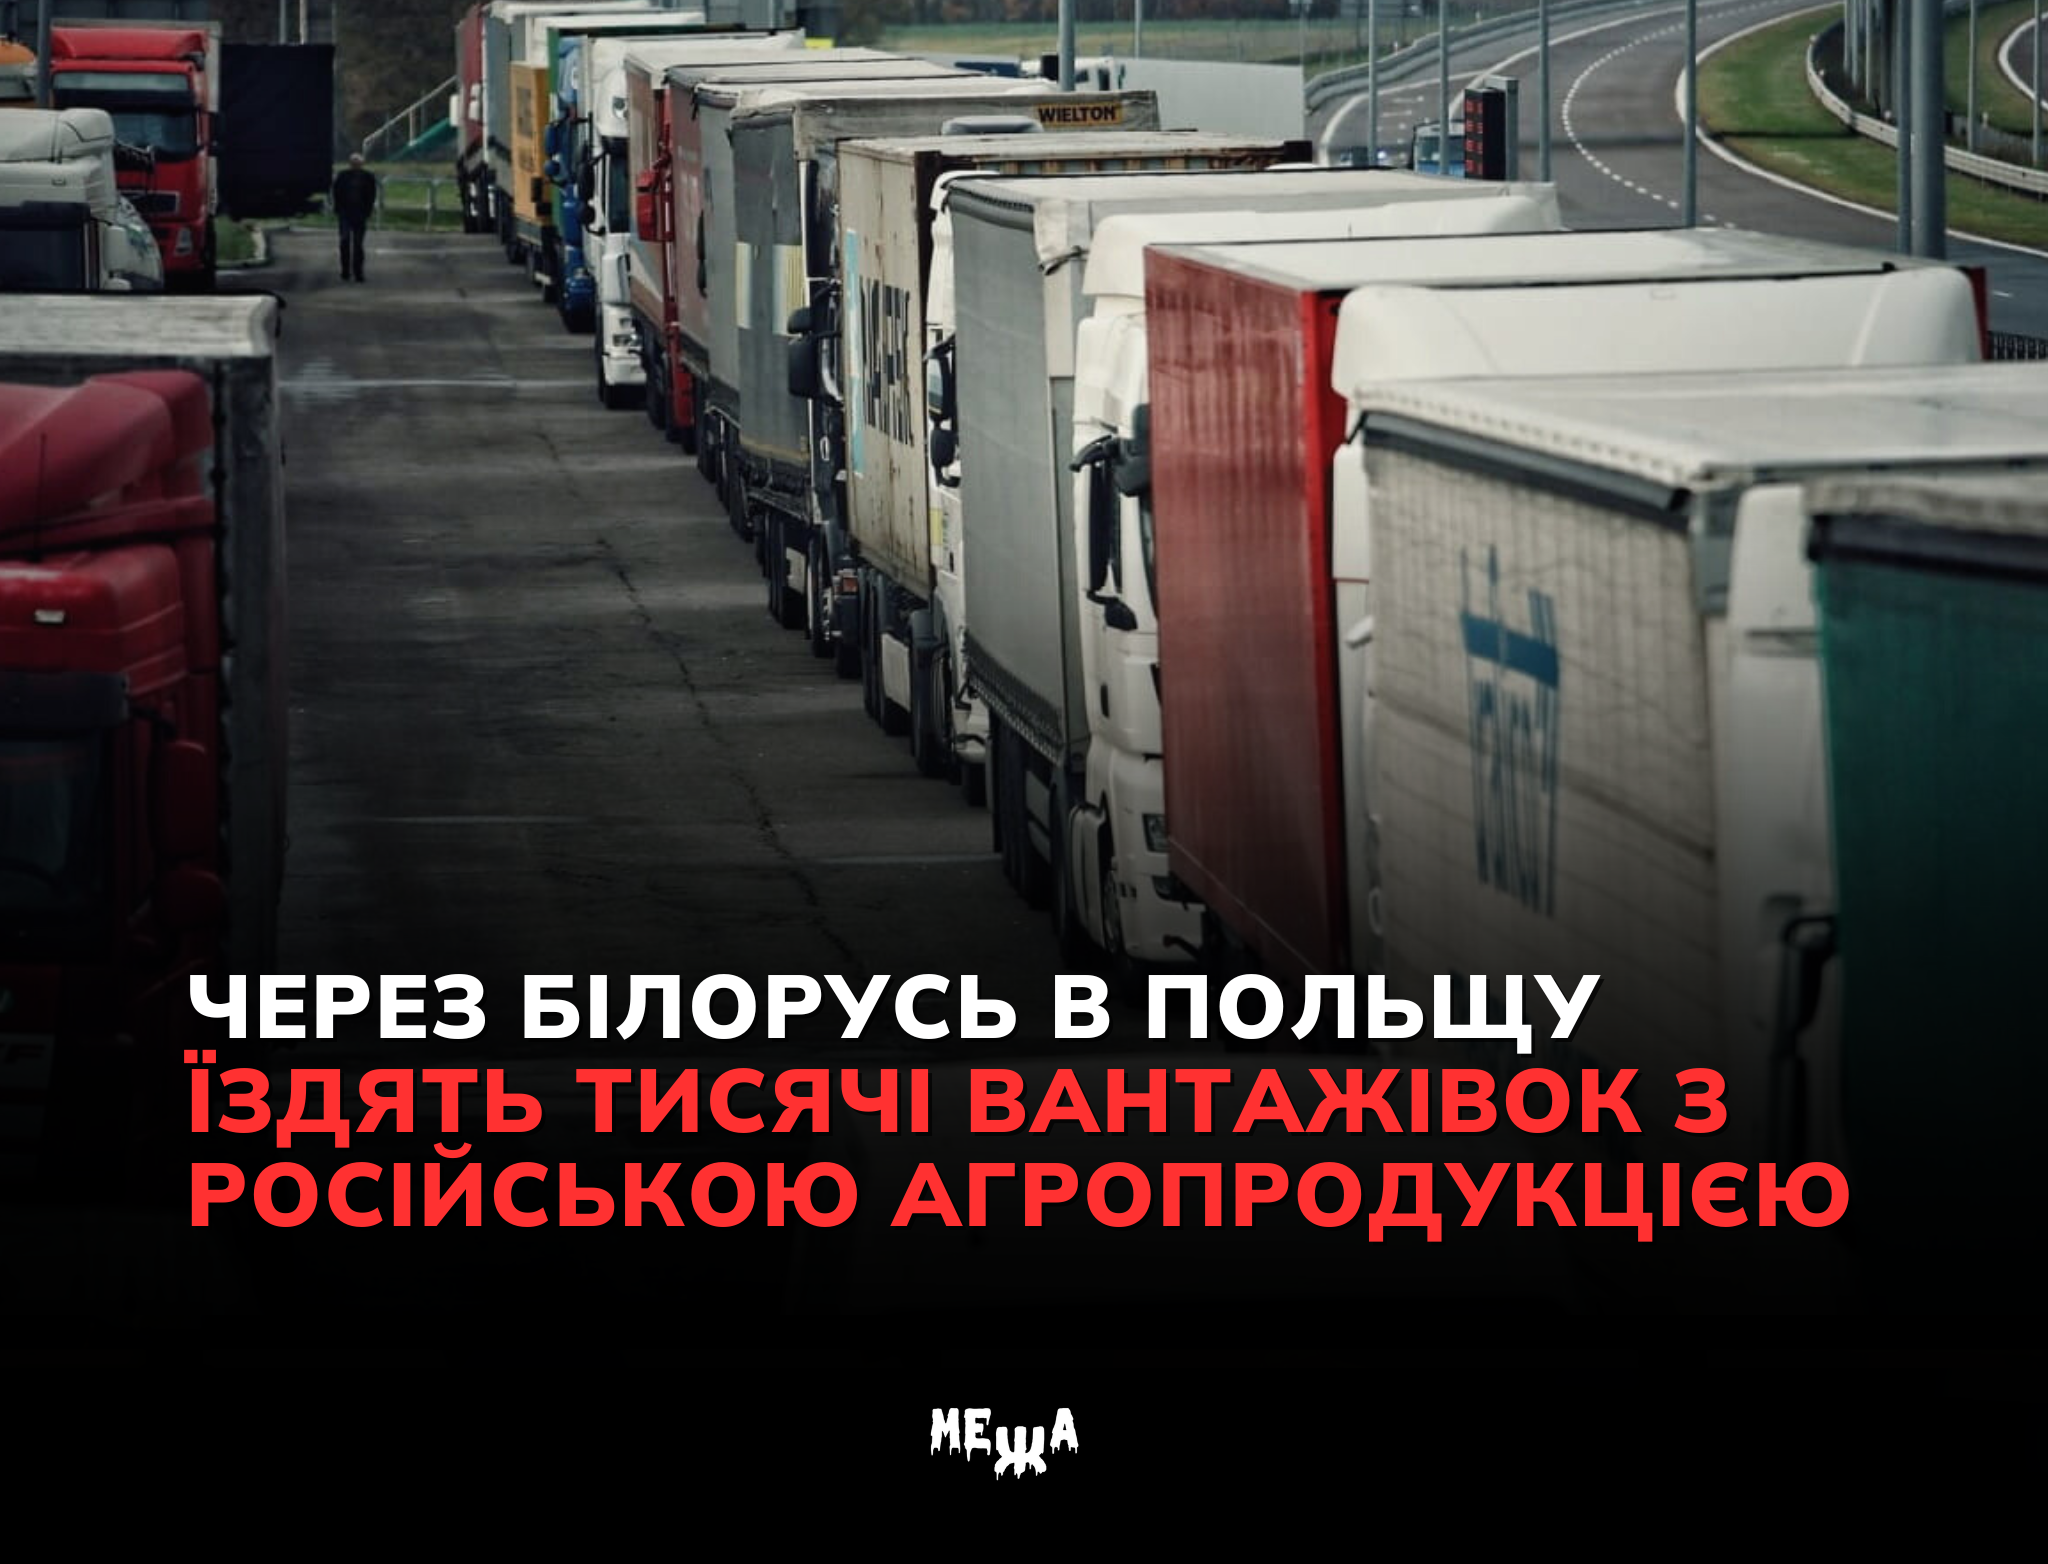 Через Білорусь в Польщу їздять тисячі вантажівок з російською агропродукцією — УП